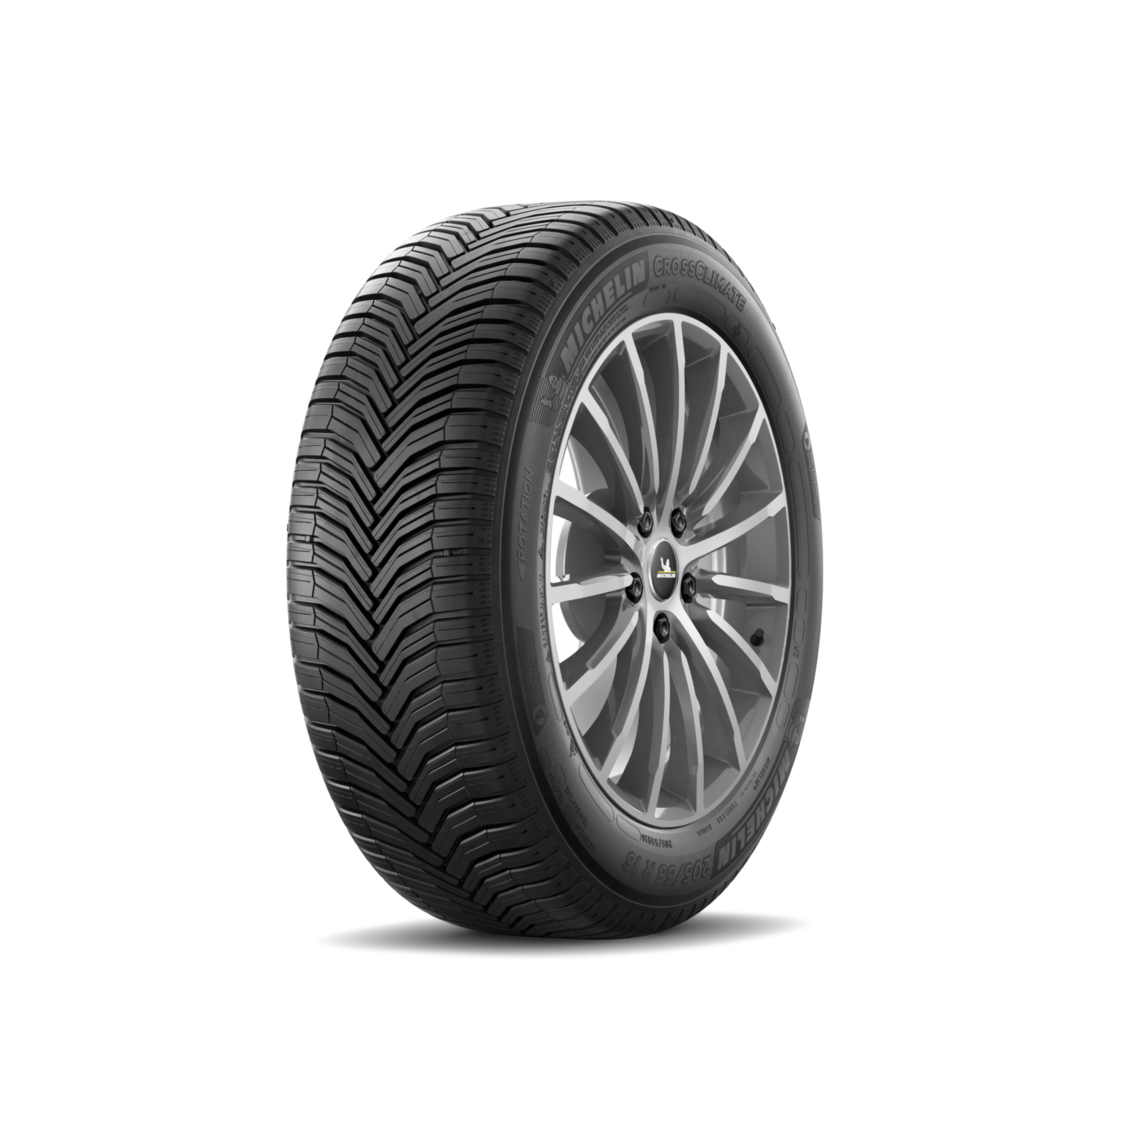 best tires for Tesla Model 3 (all-season): Michelin CrossClimate Plus